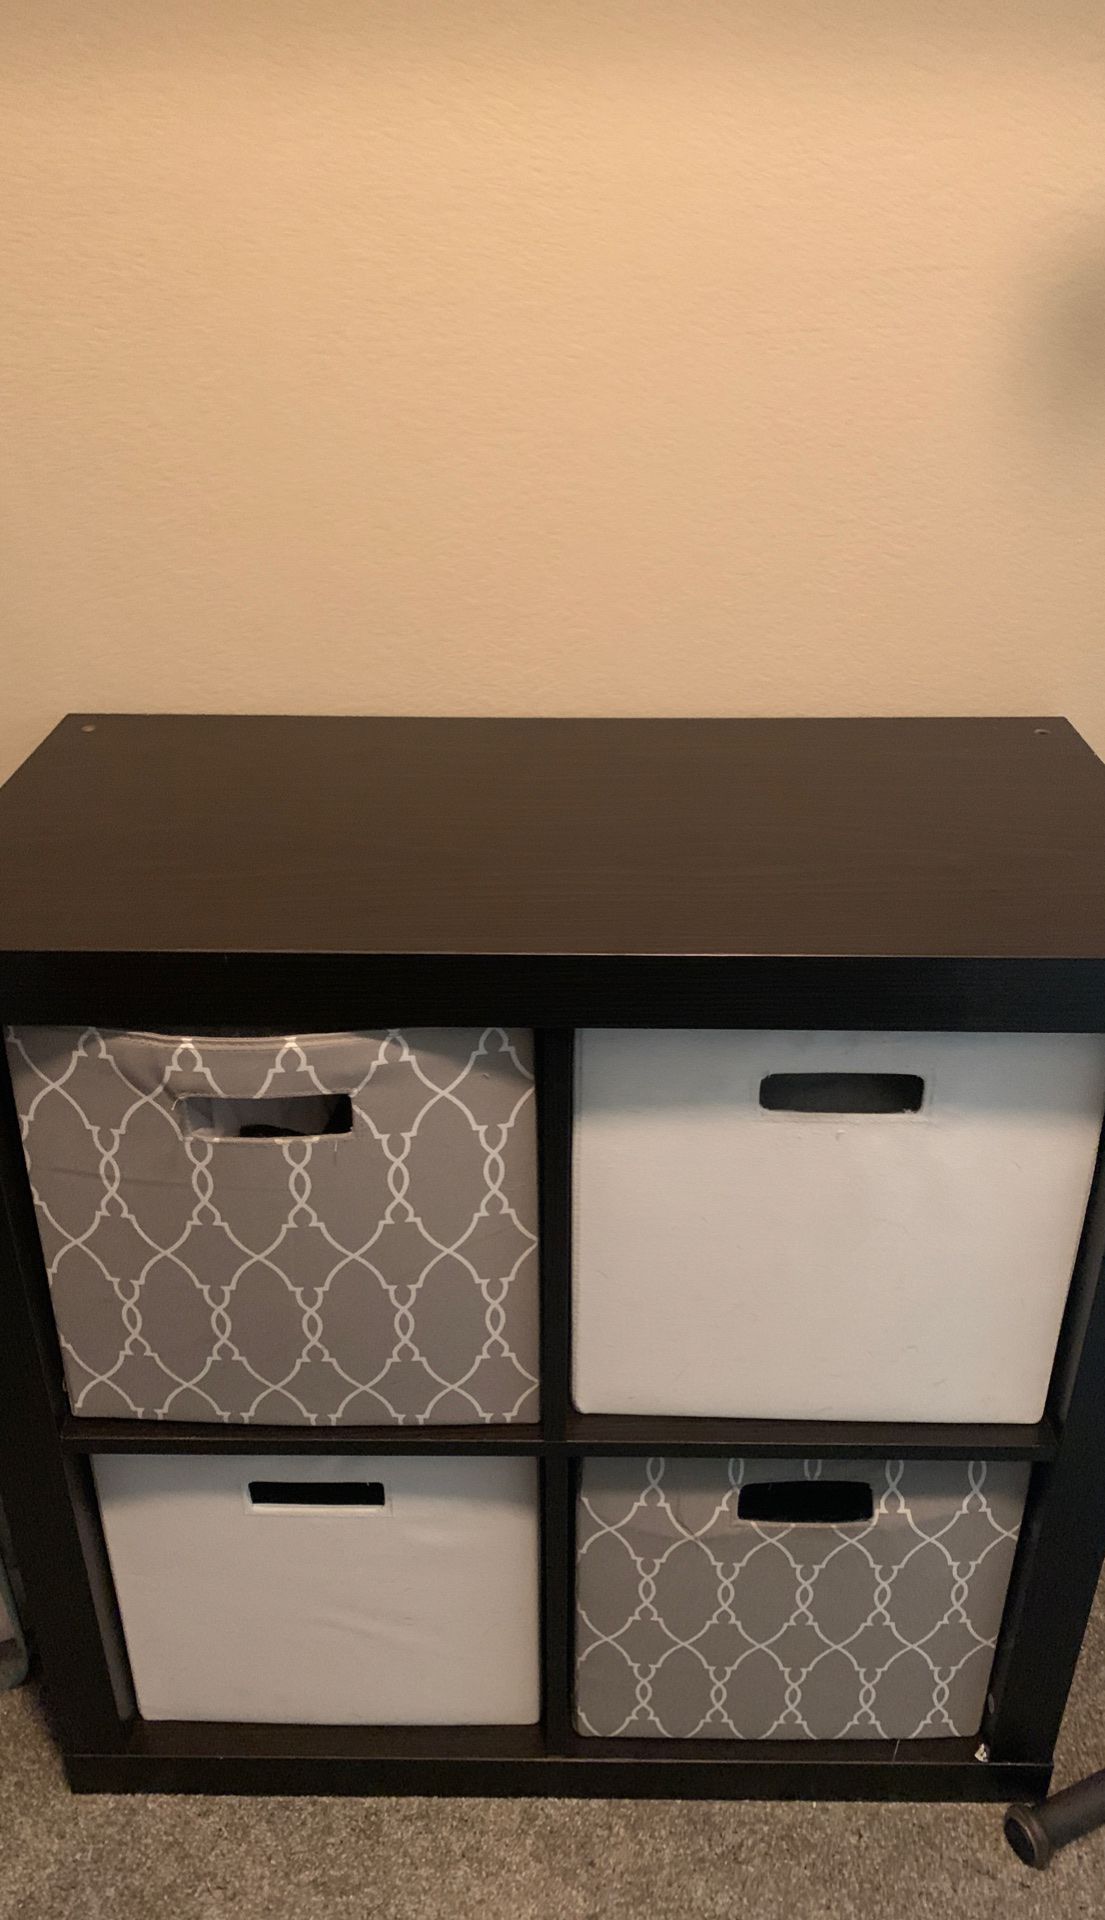 4 cube shelf organizer